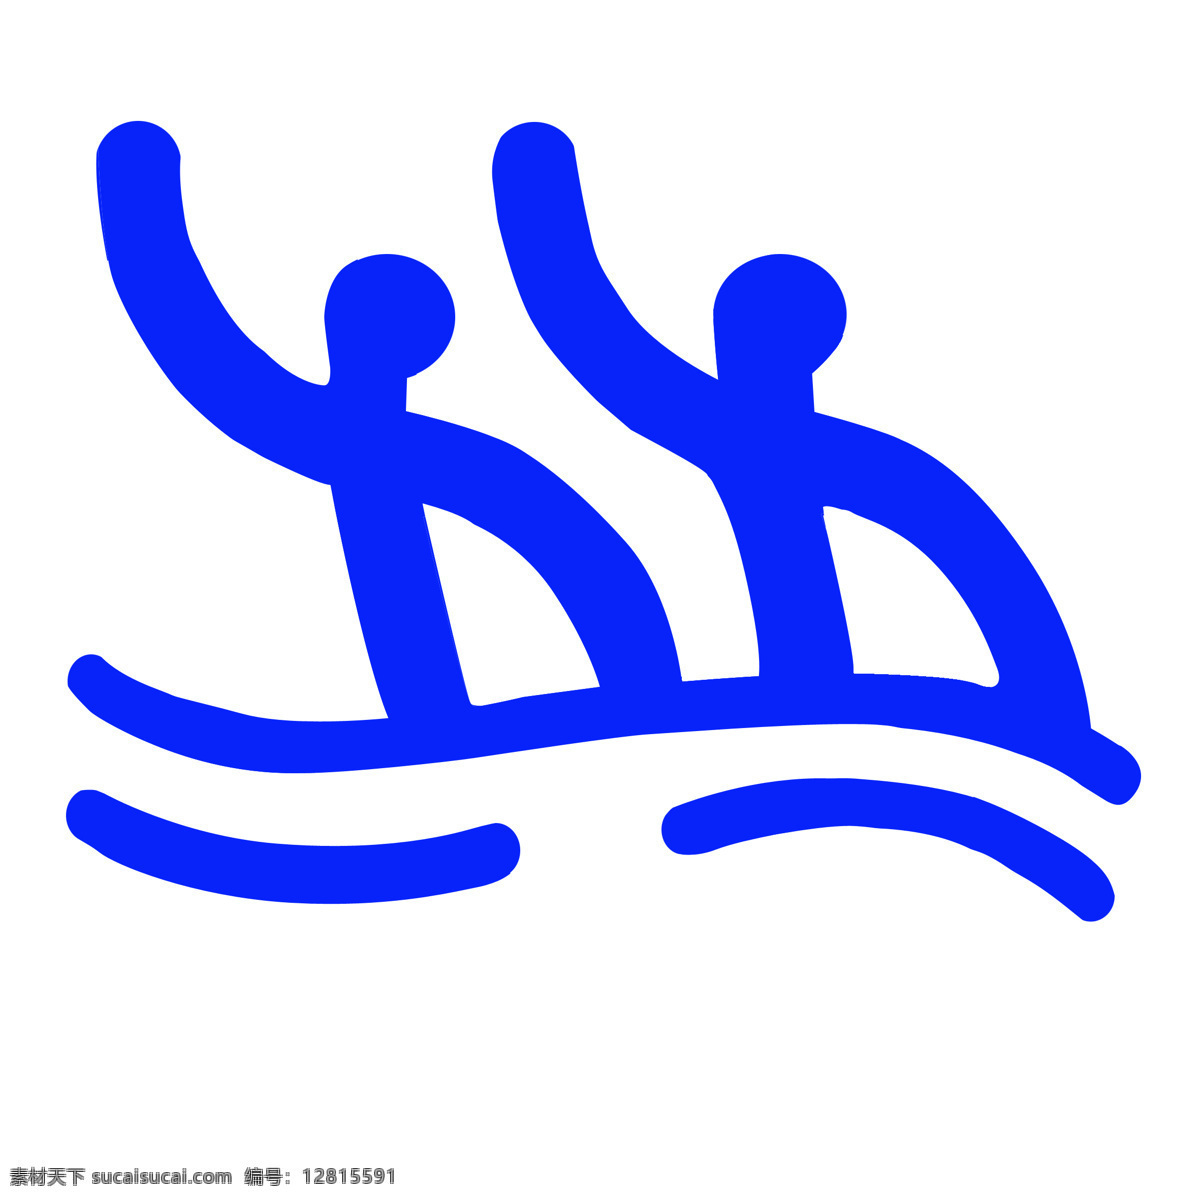 体育运动 项目 标识 花样游泳 体育 运动项目 蓝色 标识图标 公共标识标志 标志图标